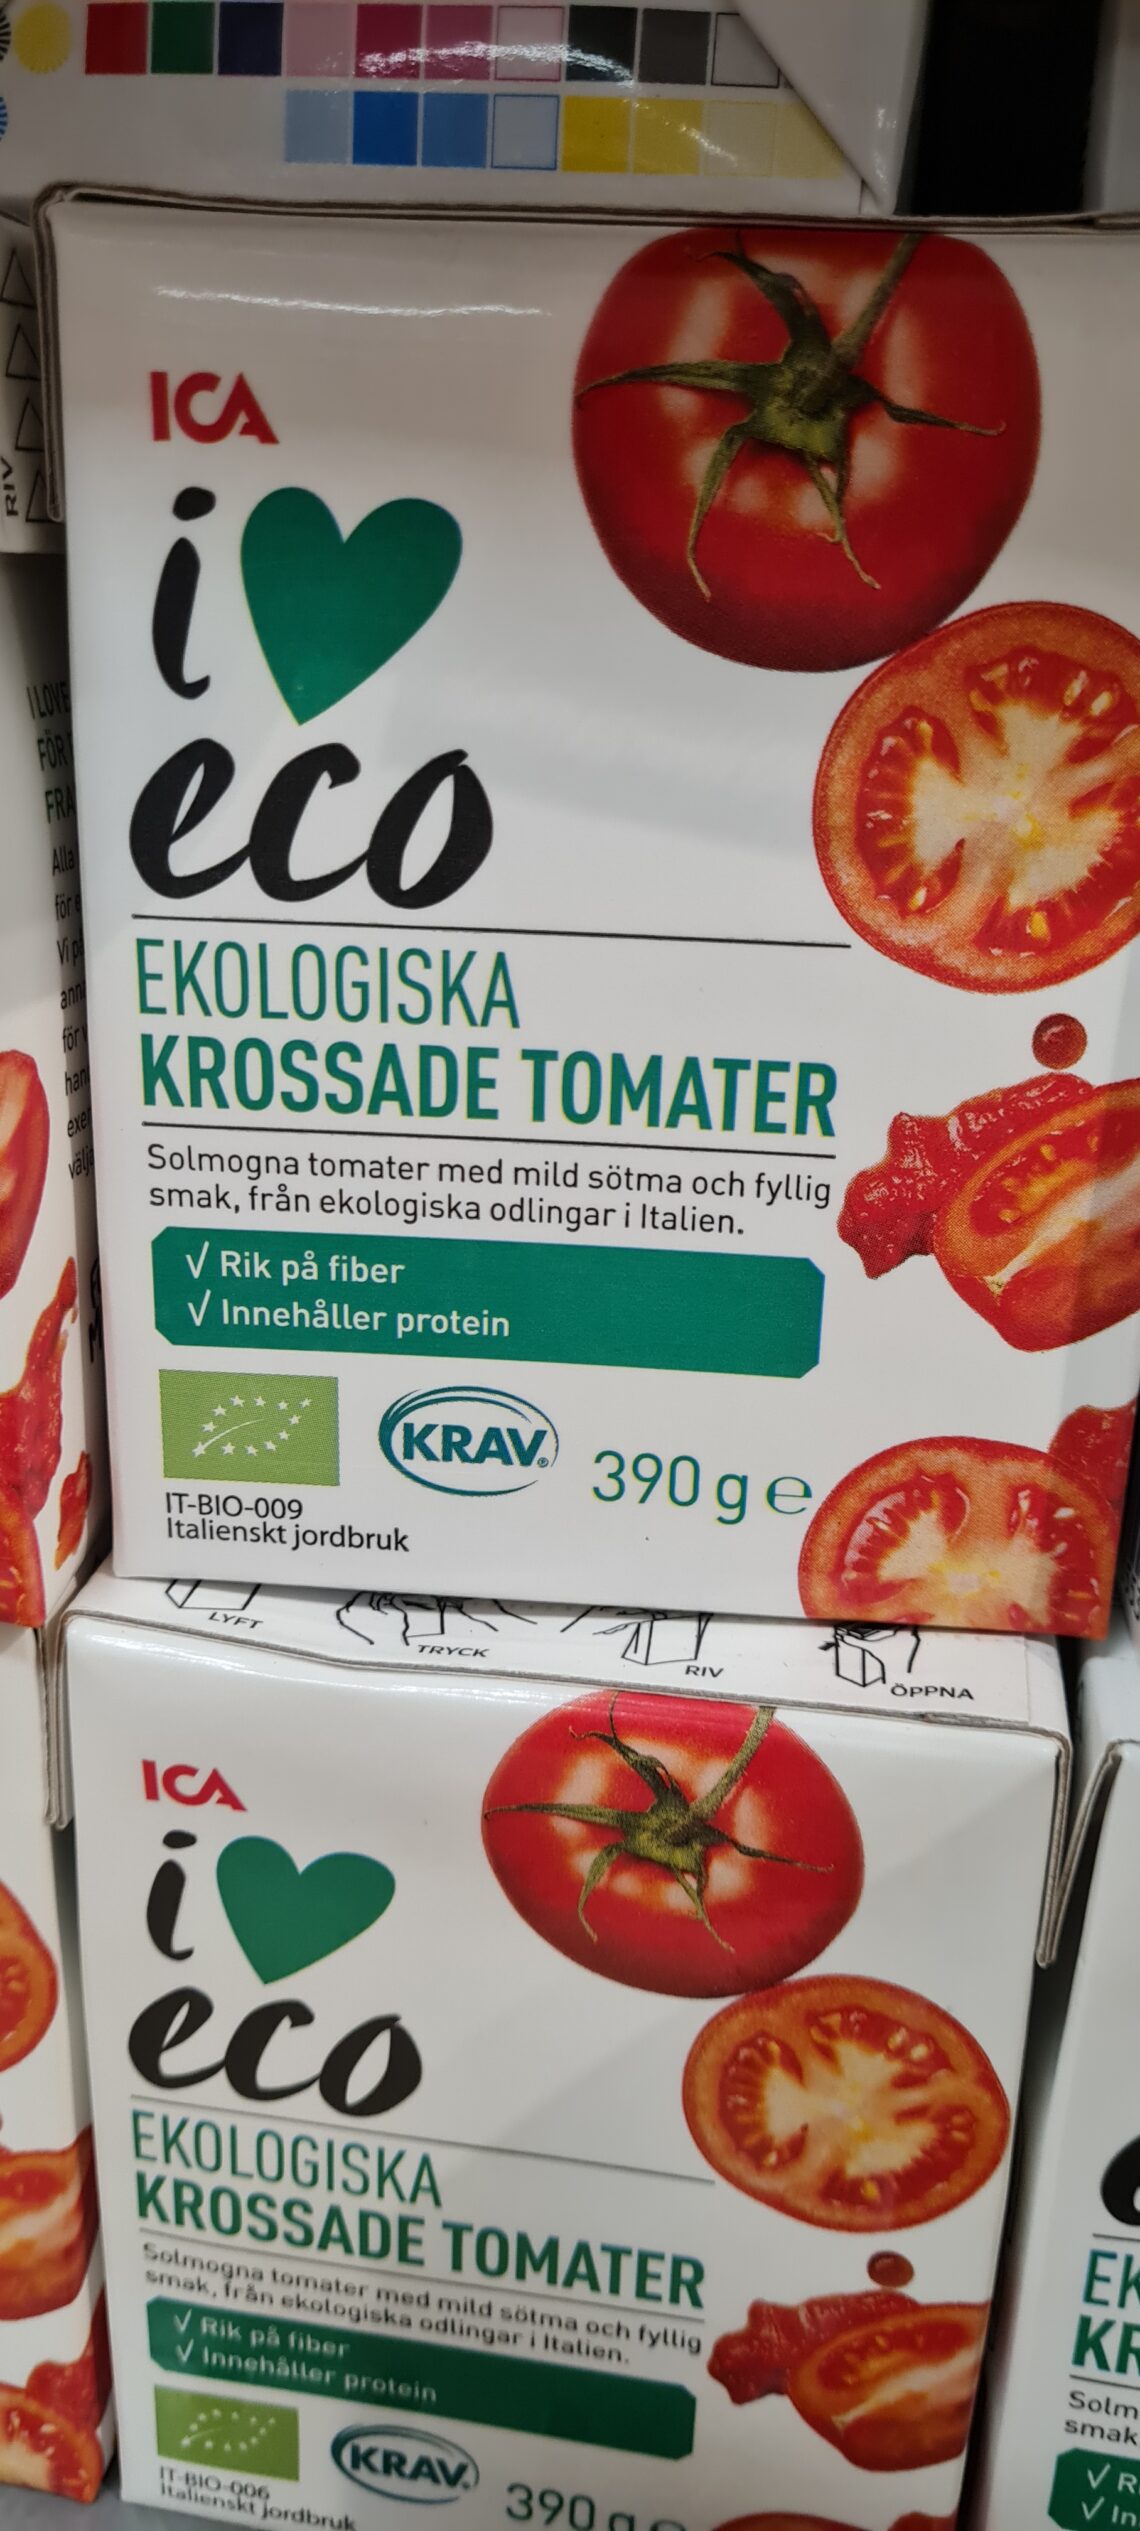 Ekologisk krossade tomater från ICA